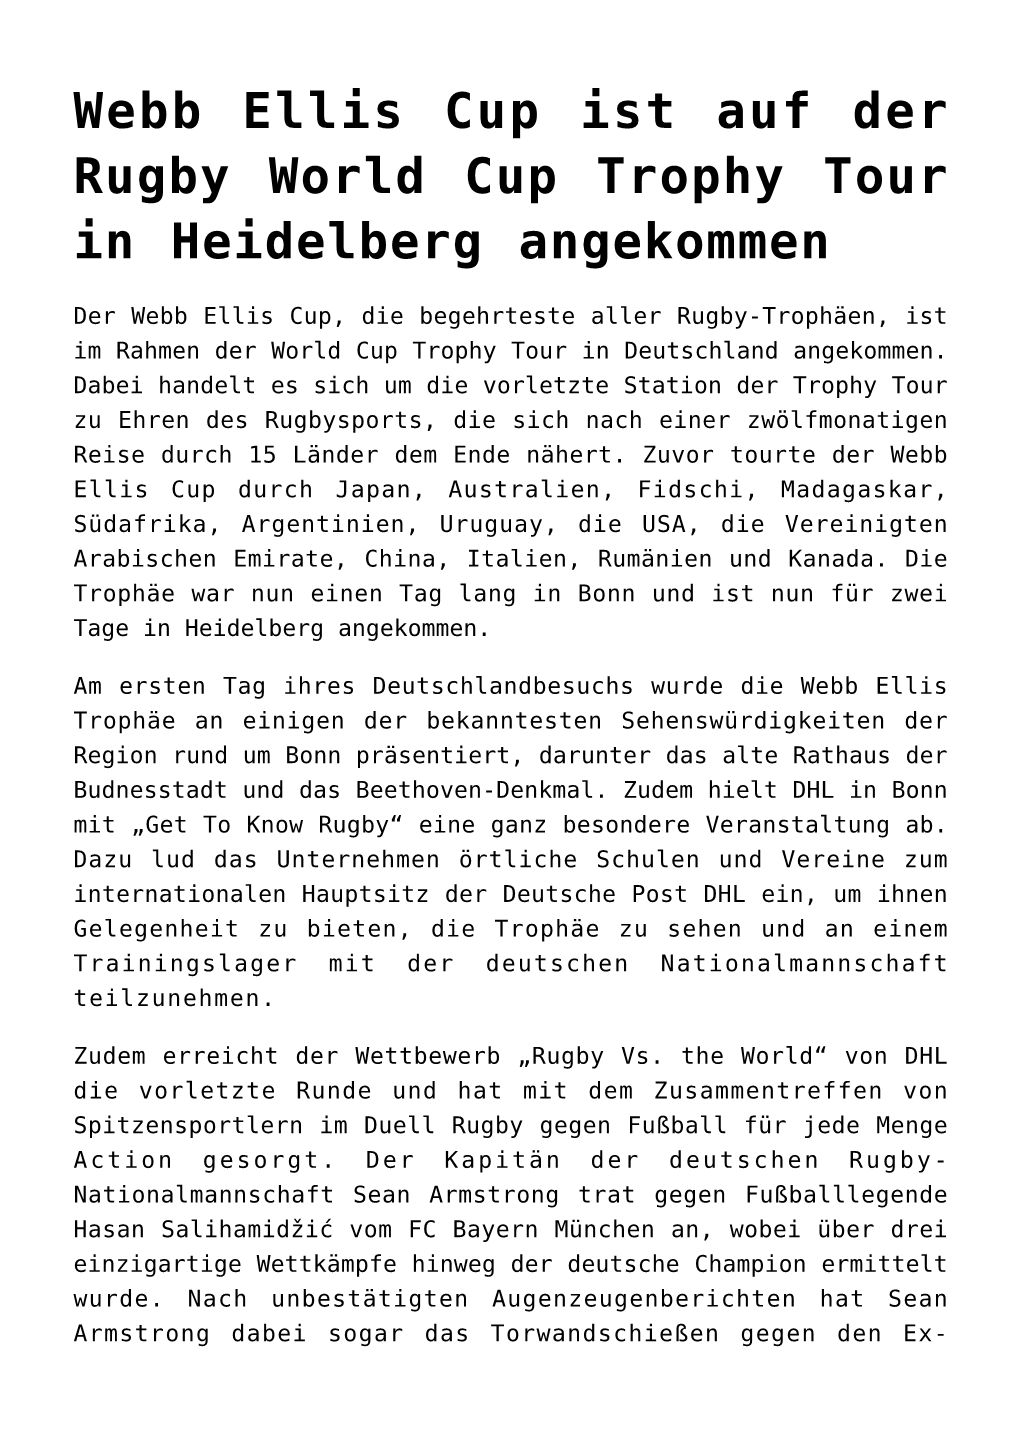 Webb Ellis Cup Ist Auf Der Rugby World Cup Trophy Tour in Heidelberg Angekommen